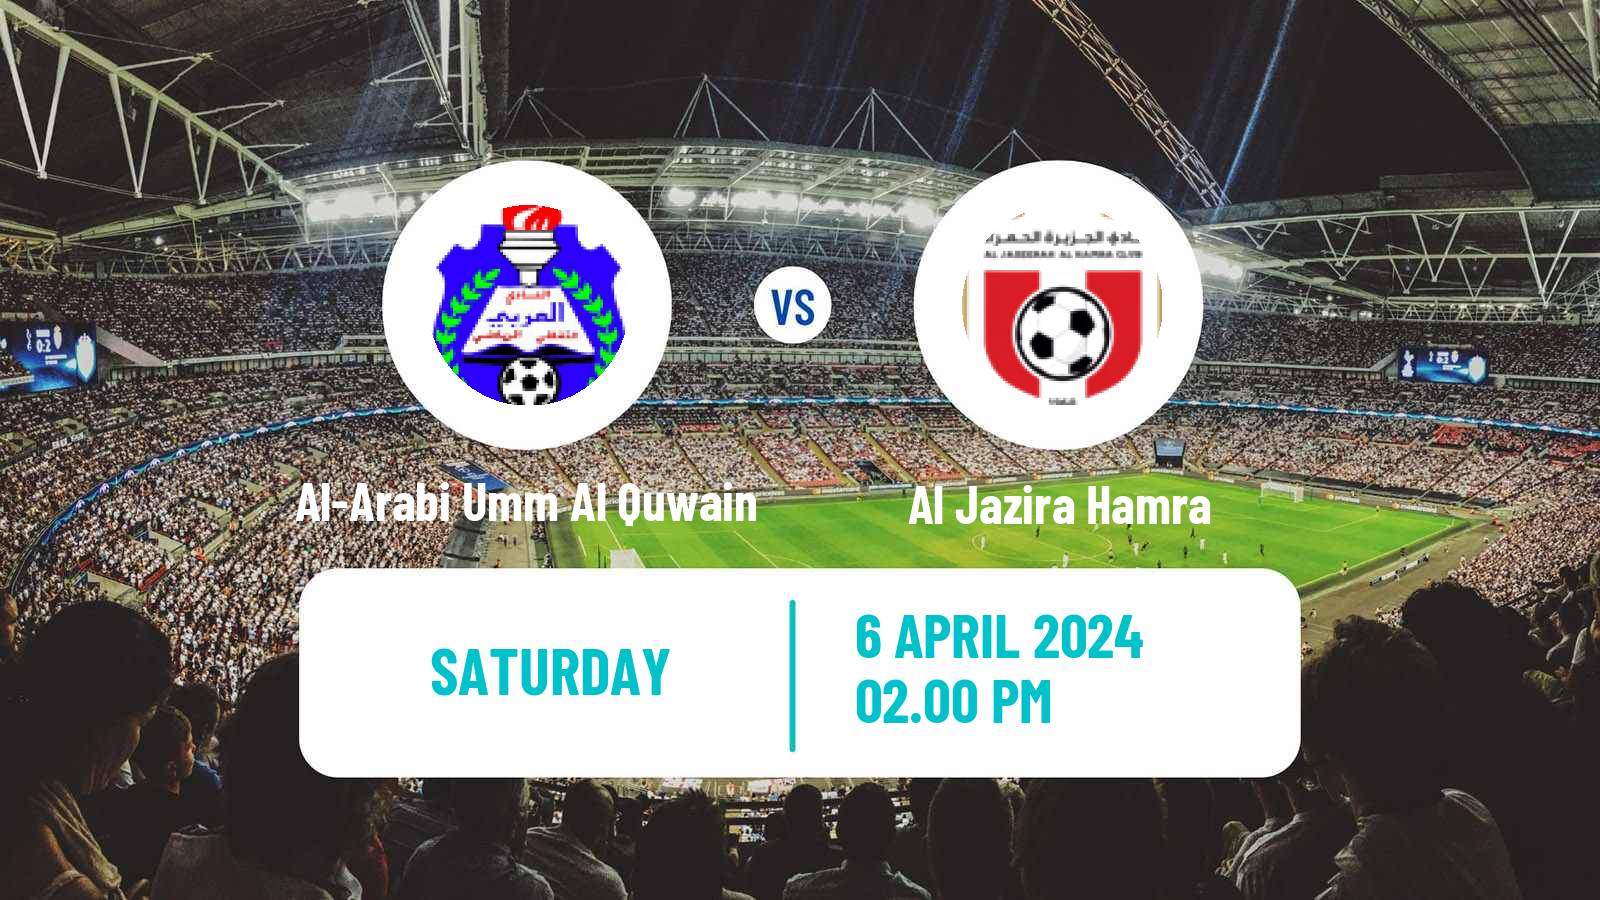 Soccer UAE Division 1 Al-Arabi Umm Al Quwain - Al Jazira Hamra